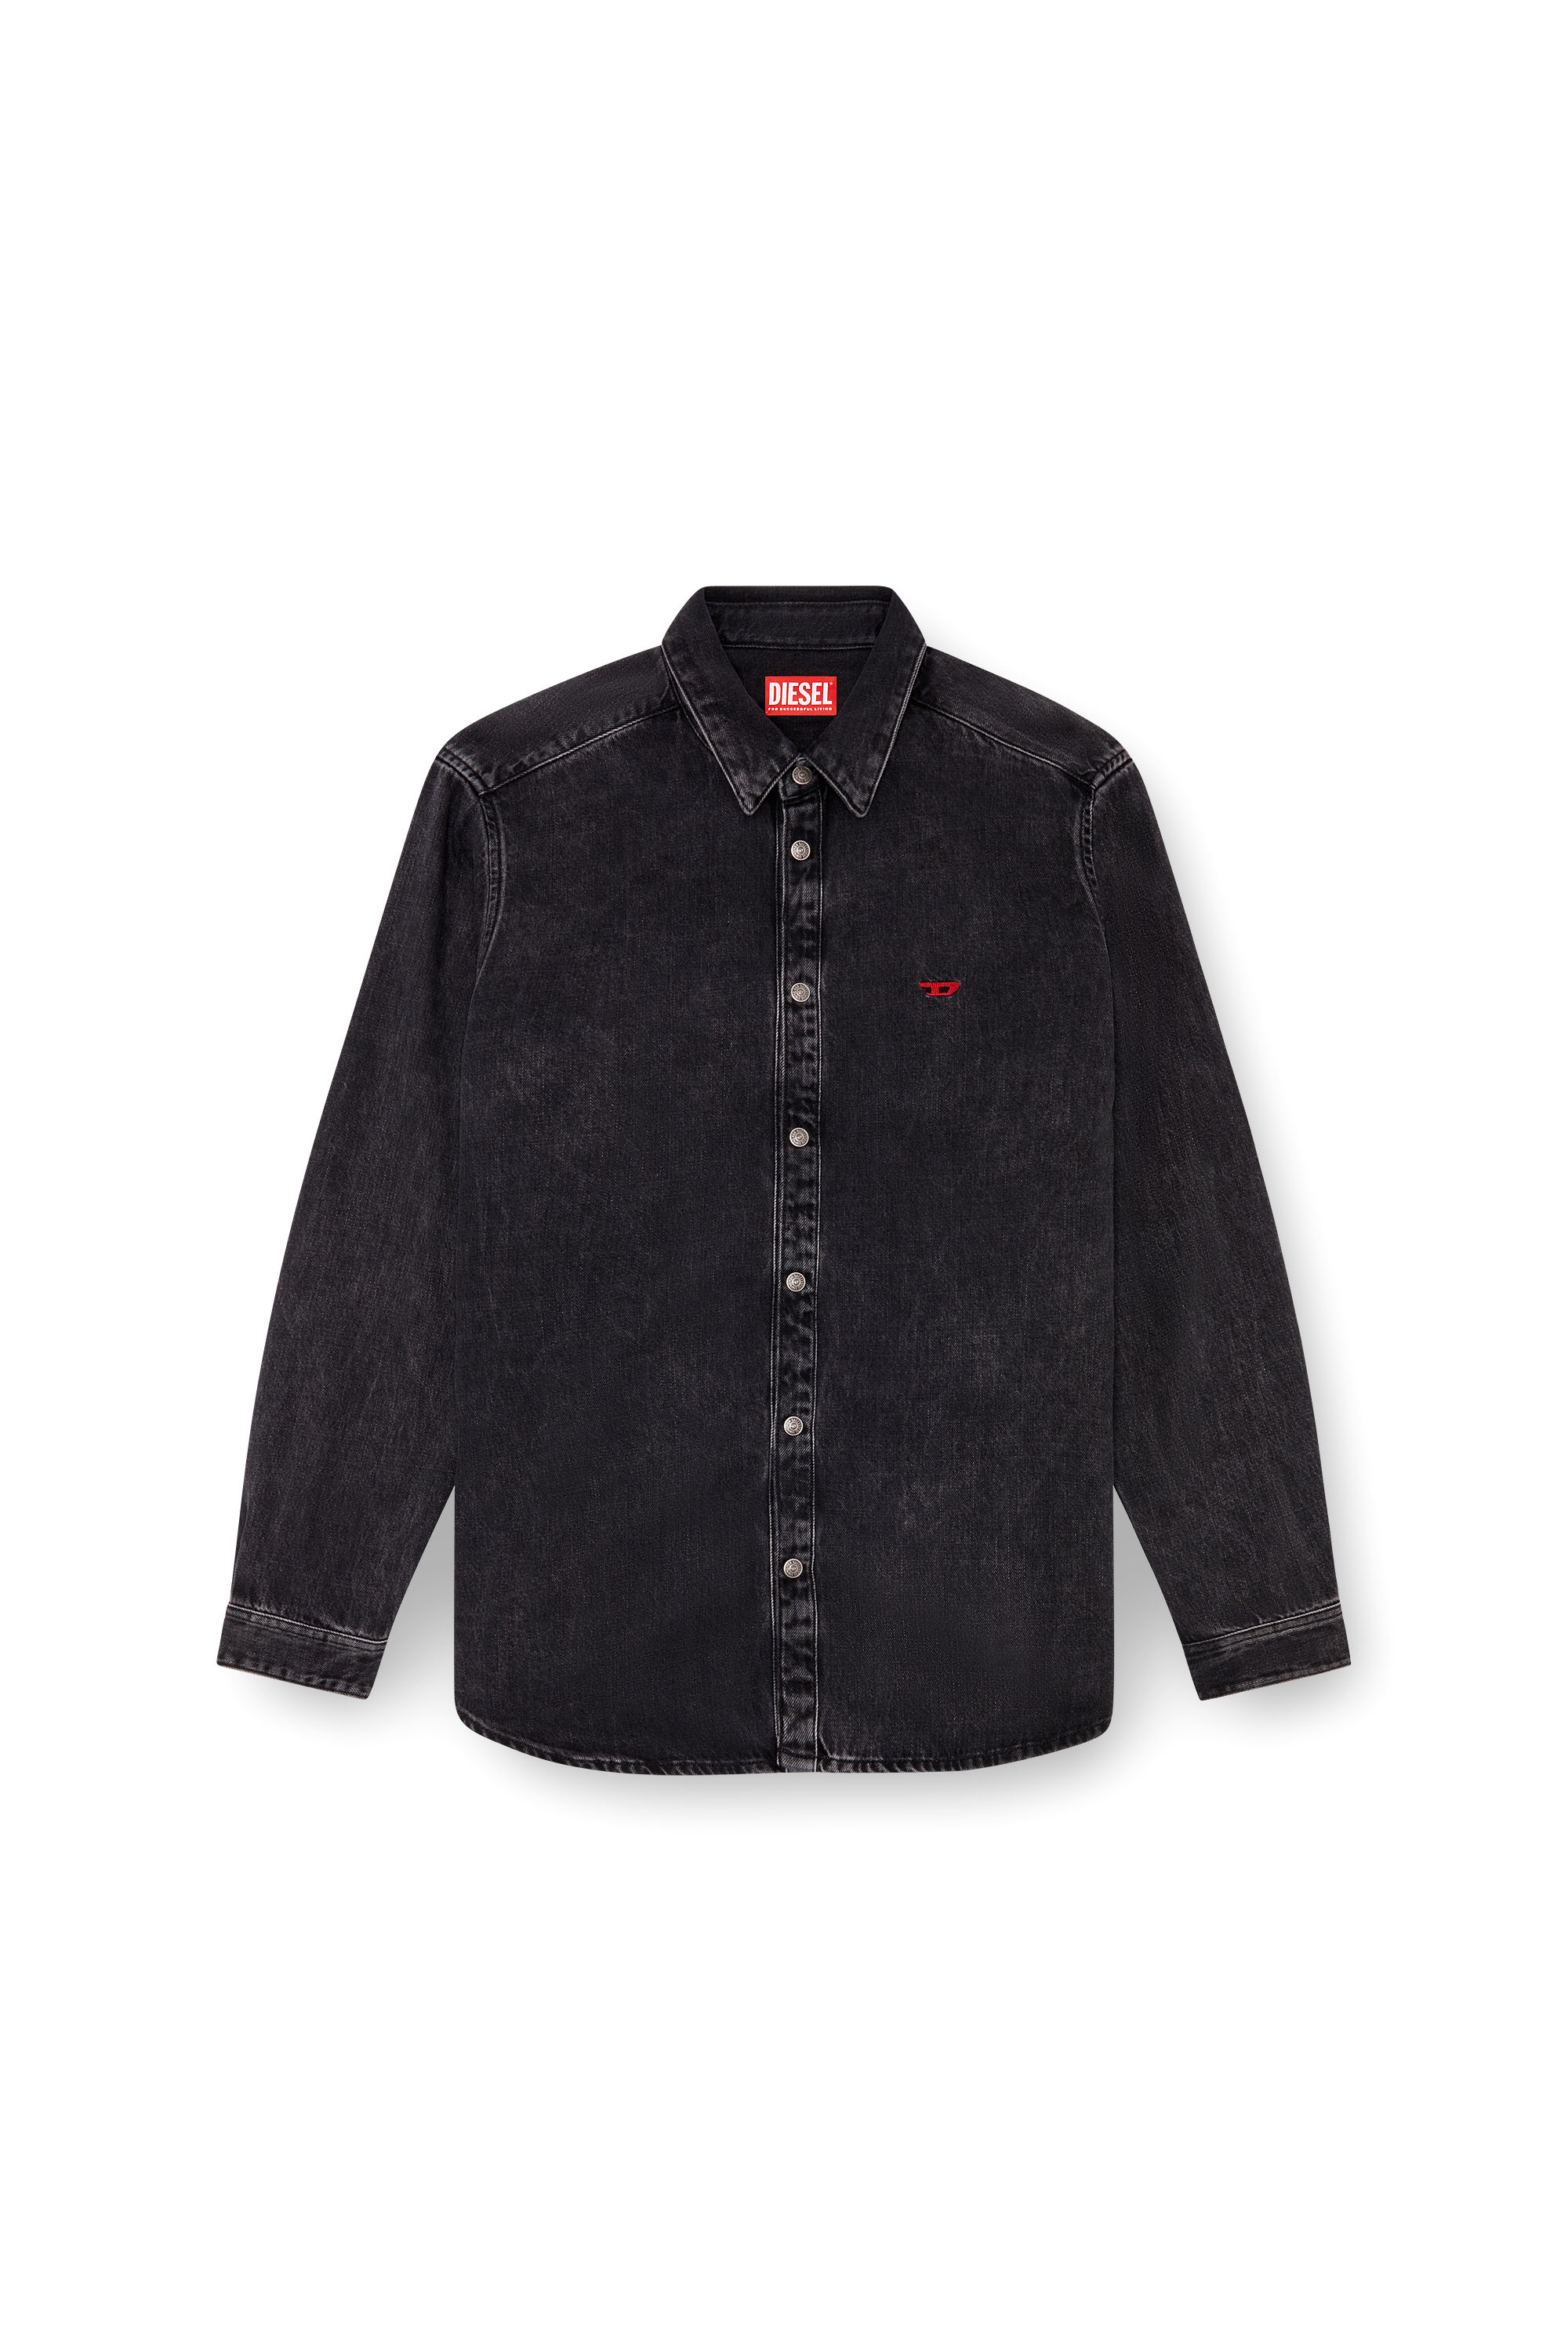 Diesel - D-SIMPLY, Male Shirt in Tencel denim in Black - Image 5